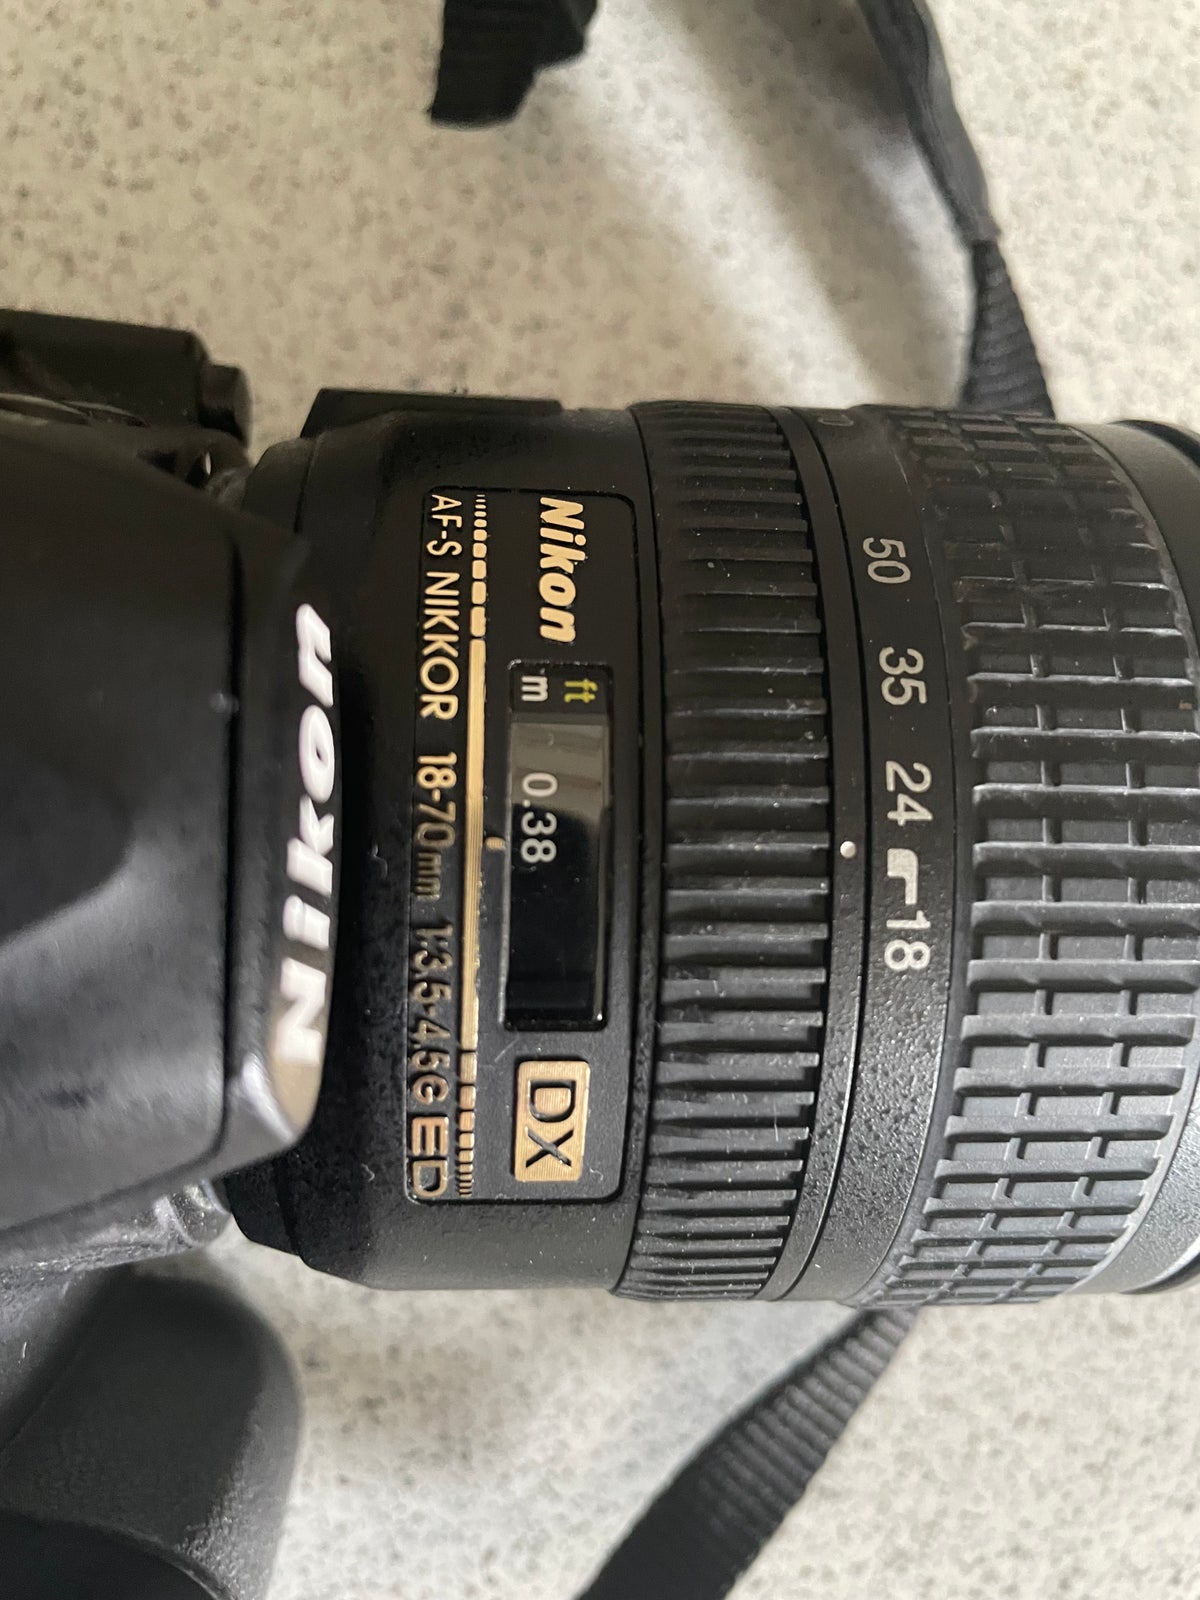 Nikon D3100, spejlrefleks, 14.2 megapixels